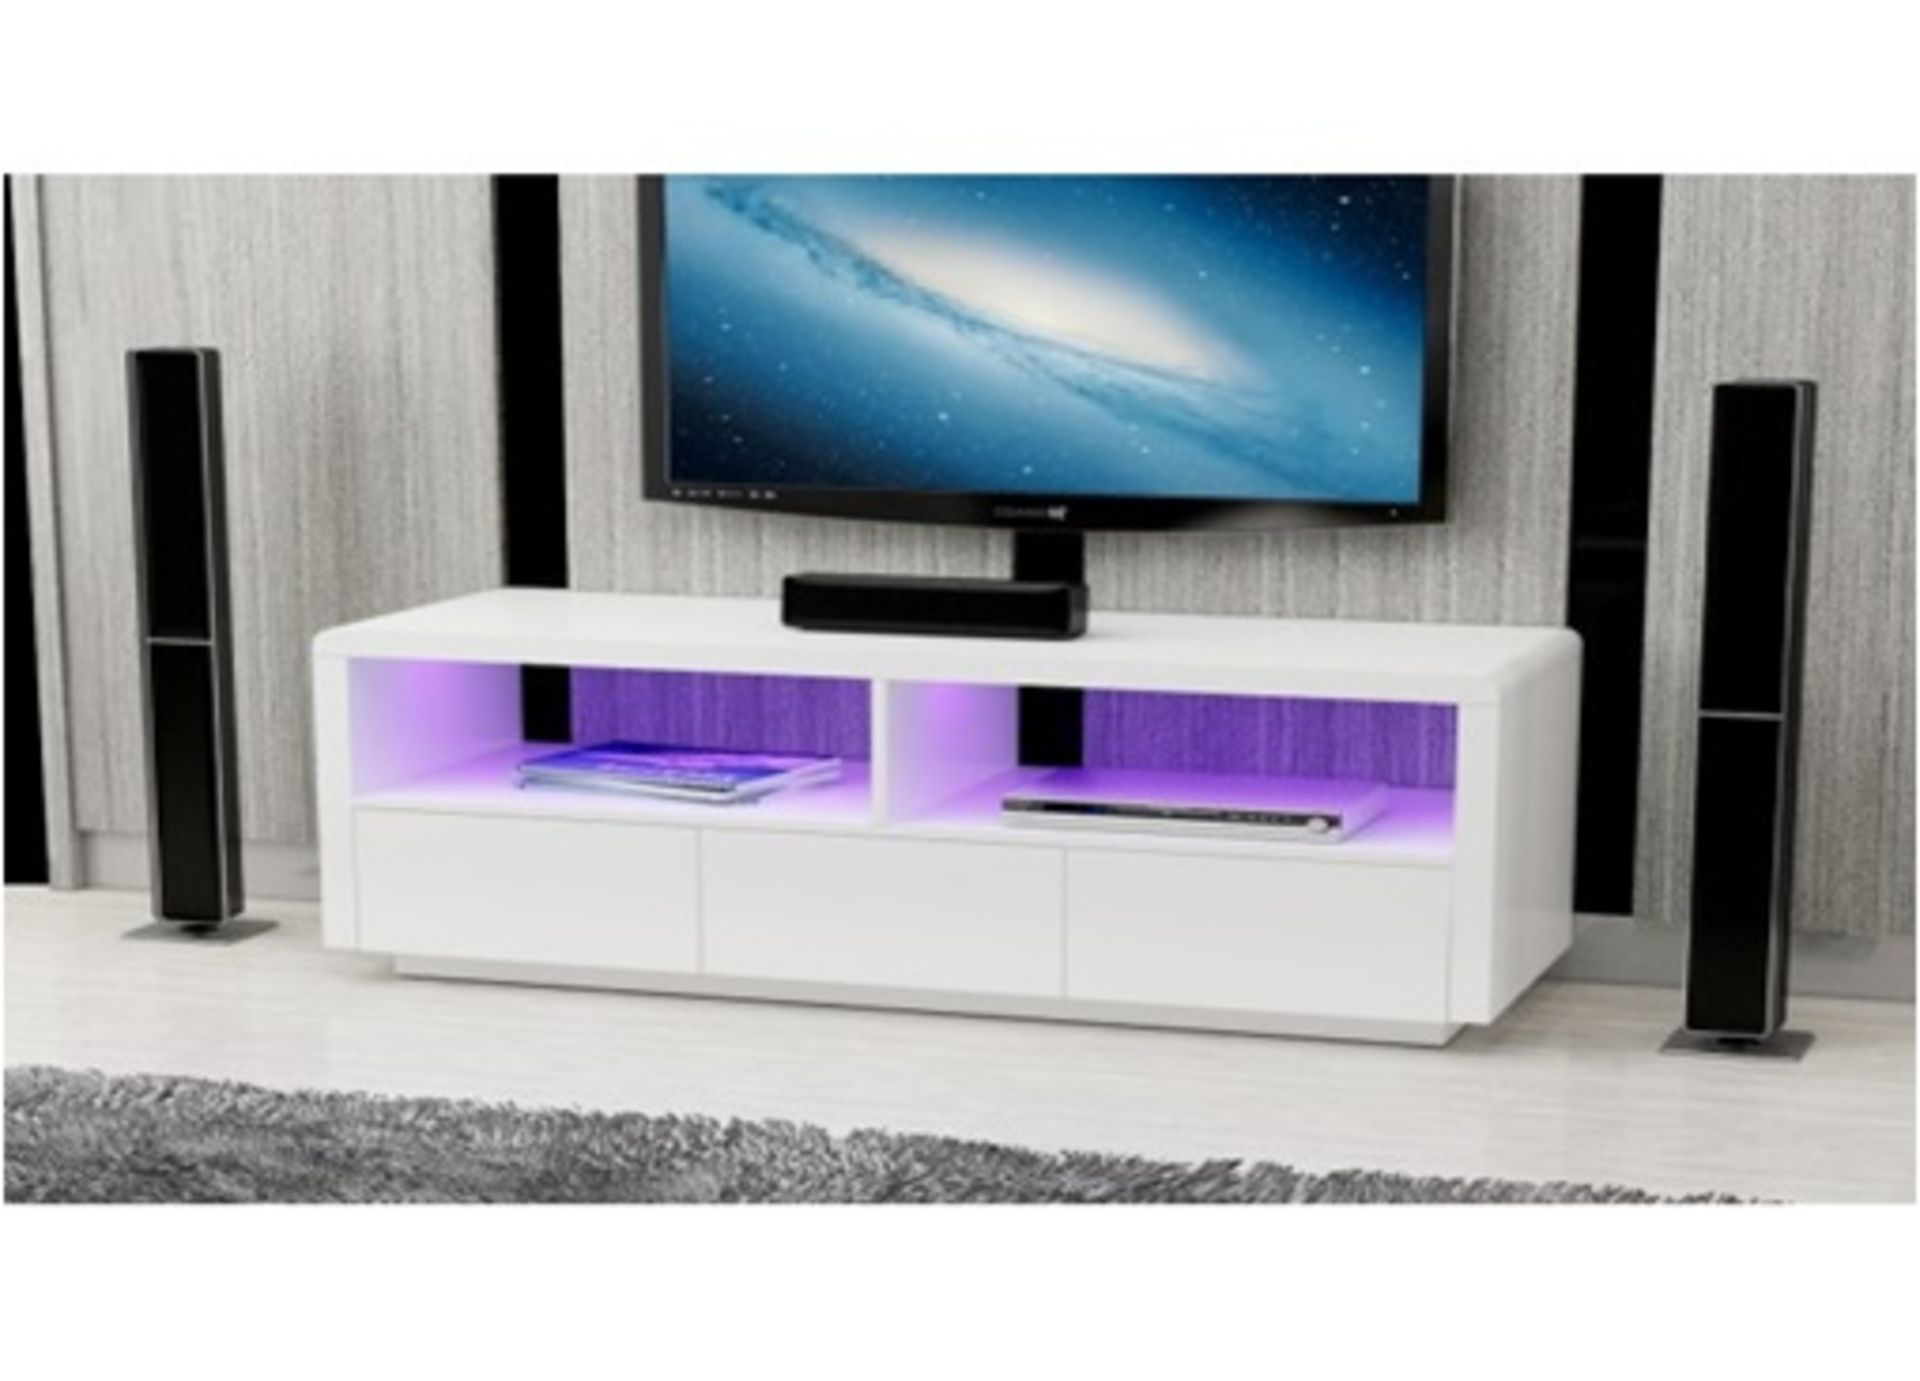 1 x Designer White High Gloss LED Light TV Unit With Drawers - Ref TVS355/WHTLED (Brand New & Boxed)